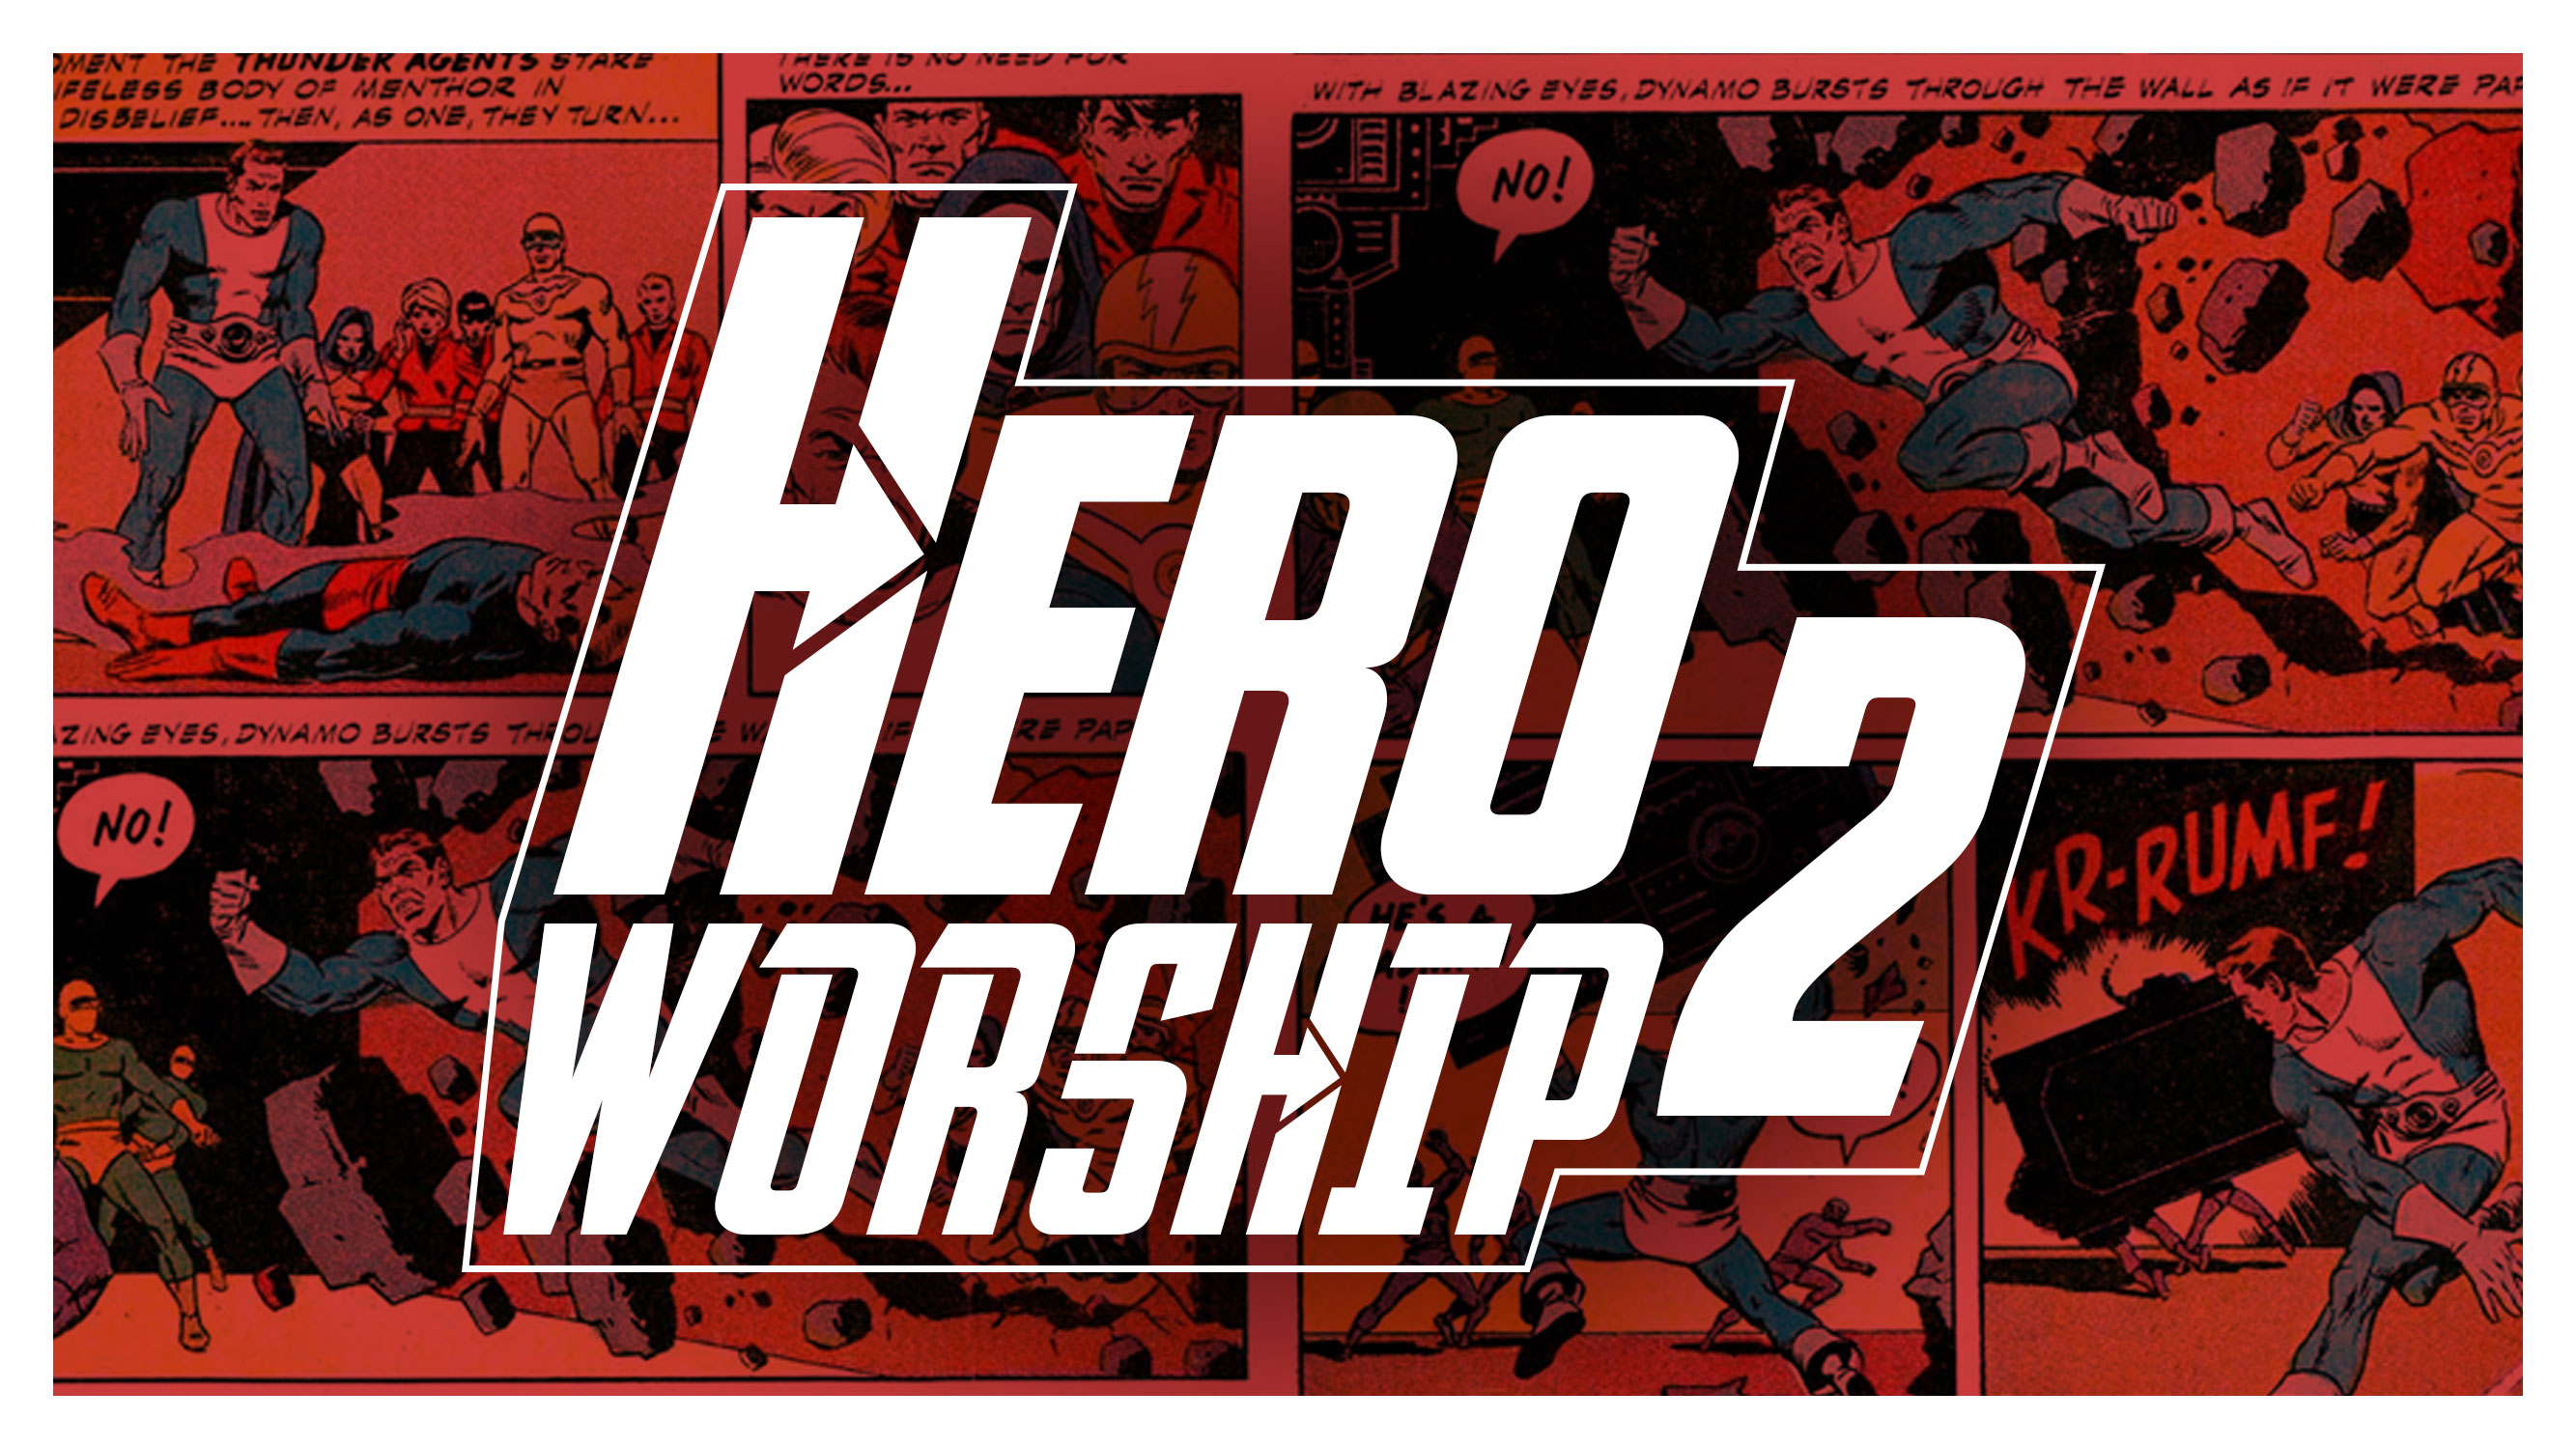  Hero Worship 2